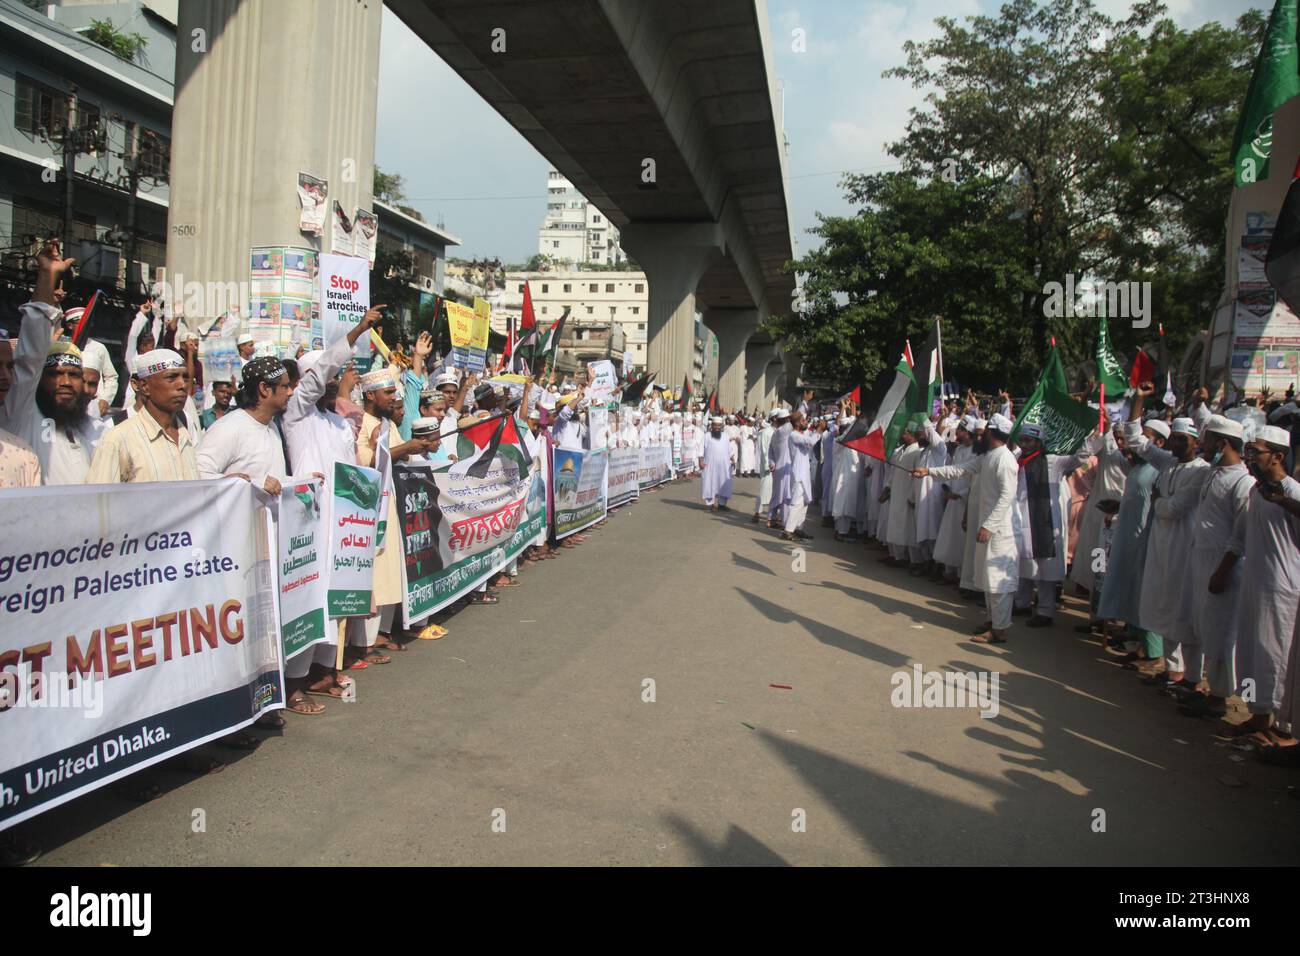 Dhaka Bangladesch 25. Oktober 2023, die islamische Bewegung führte Demonstrationen und Märsche gegen die illegale israelische Besetzung Palästinas durch. Nazmul isla Stockfoto